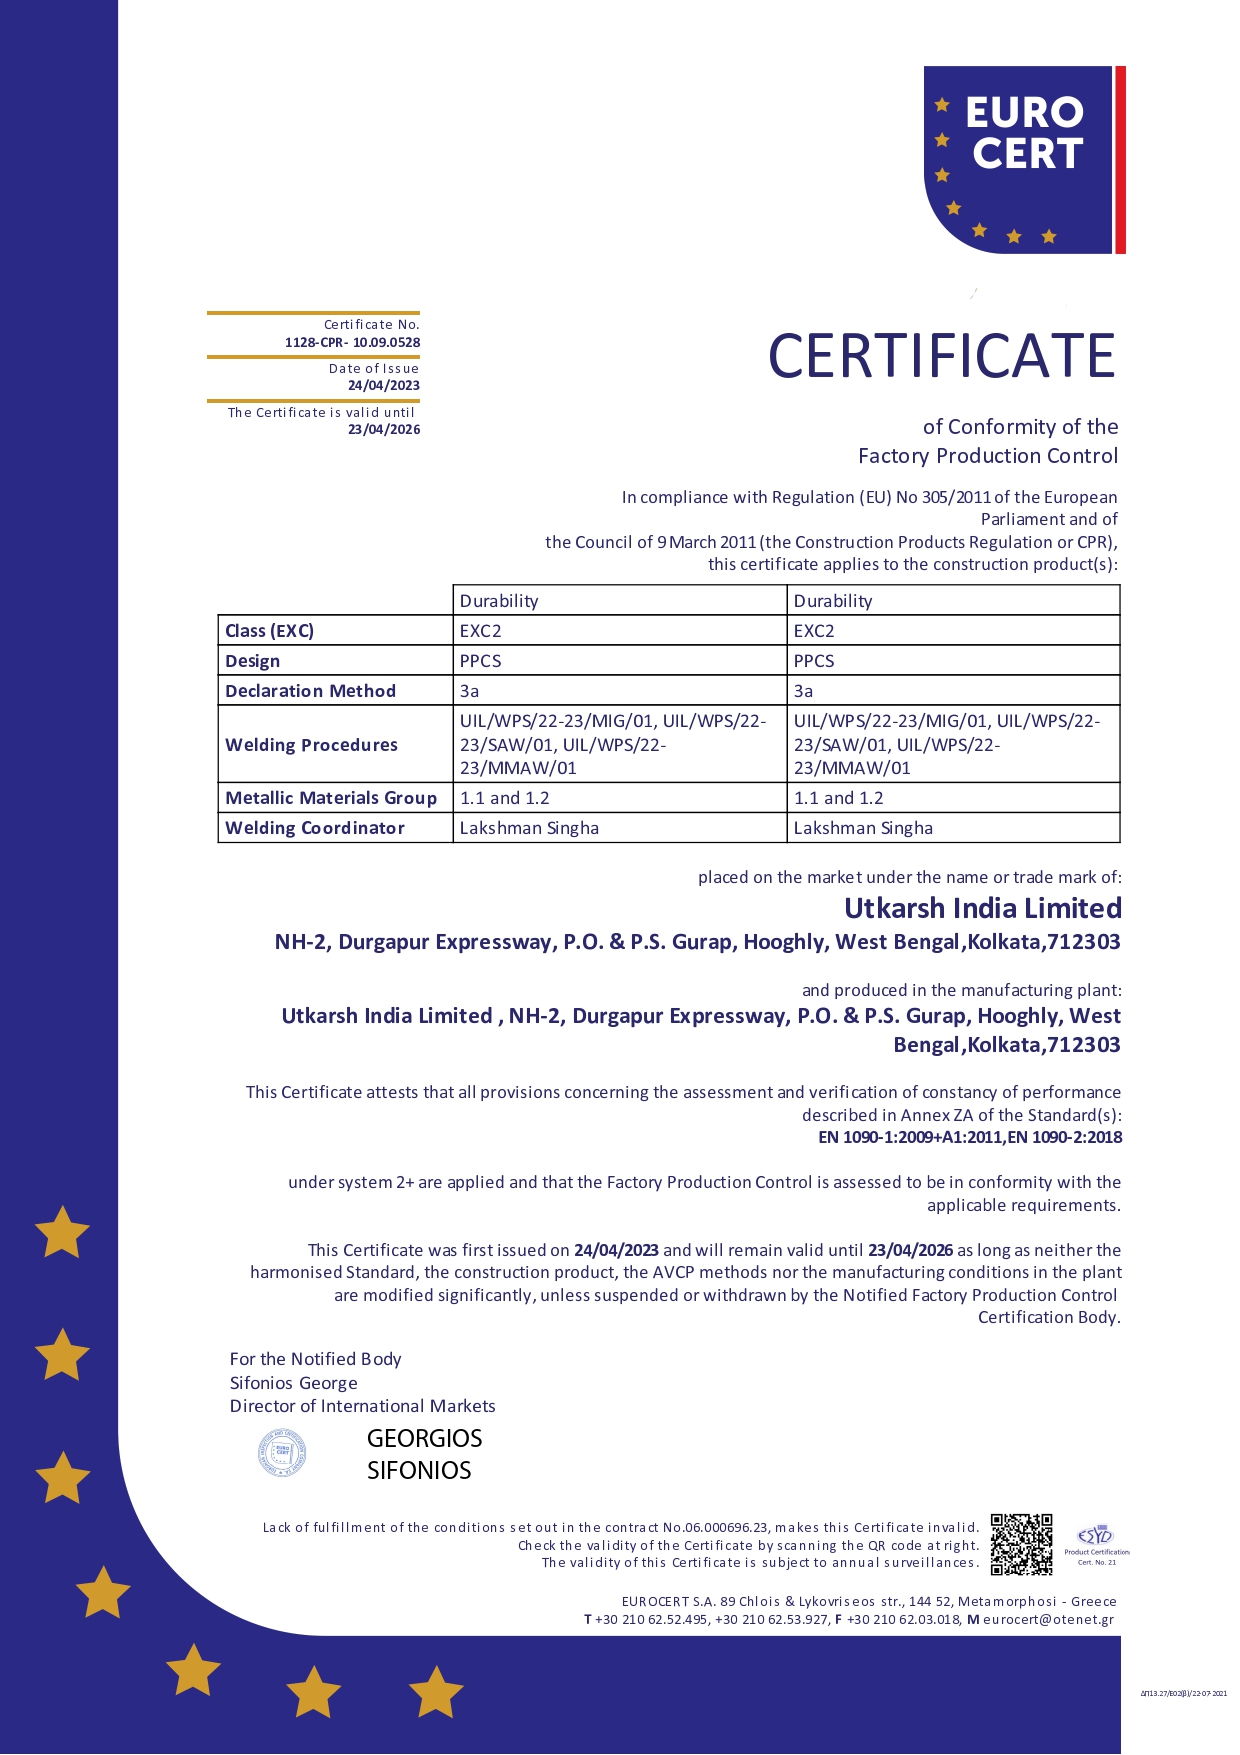 EN 1090 Certification